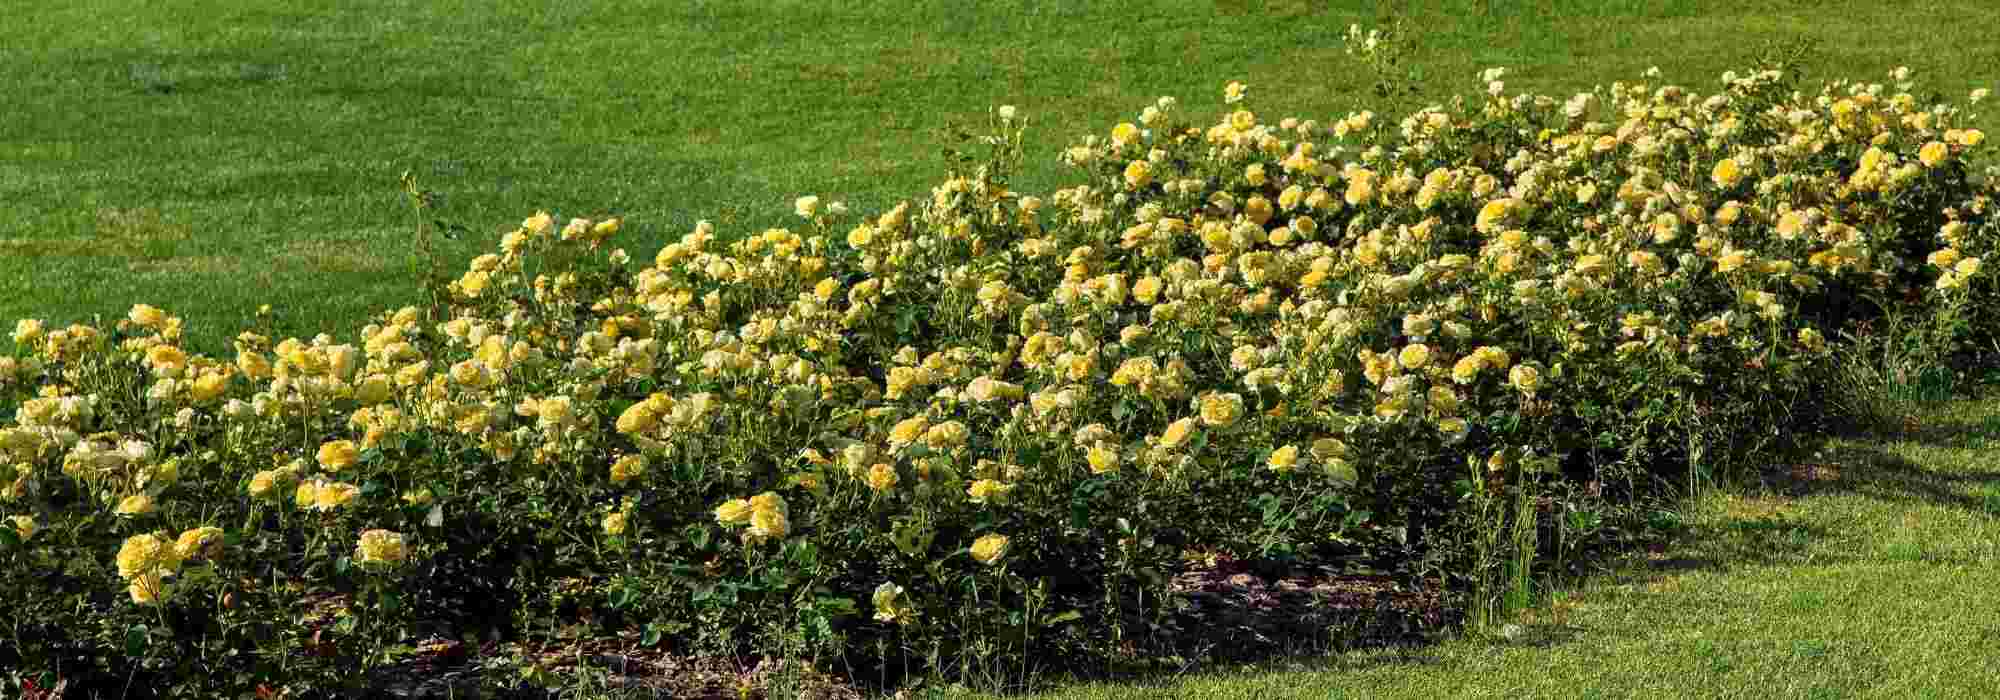 6 rosiers couvre-sol à fleurs jaunes